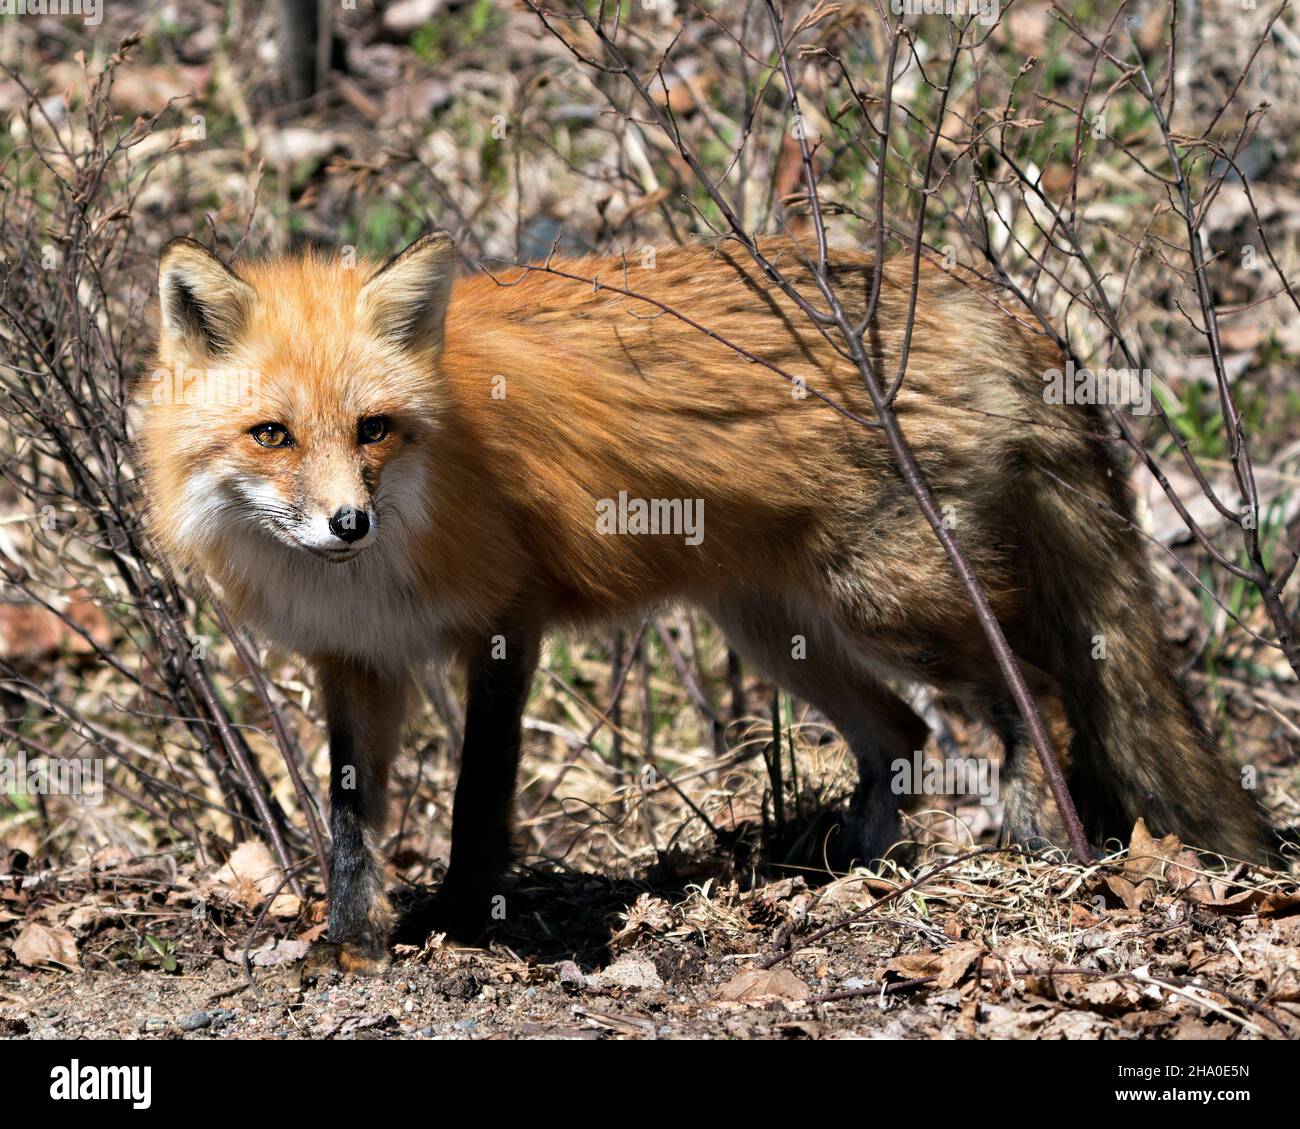 Profil rapproché du renard roux vue latérale au printemps affichant la queue du renard, dans son environnement et son habitat avec un arrière-plan de feuillage flou.Fox image. Banque D'Images